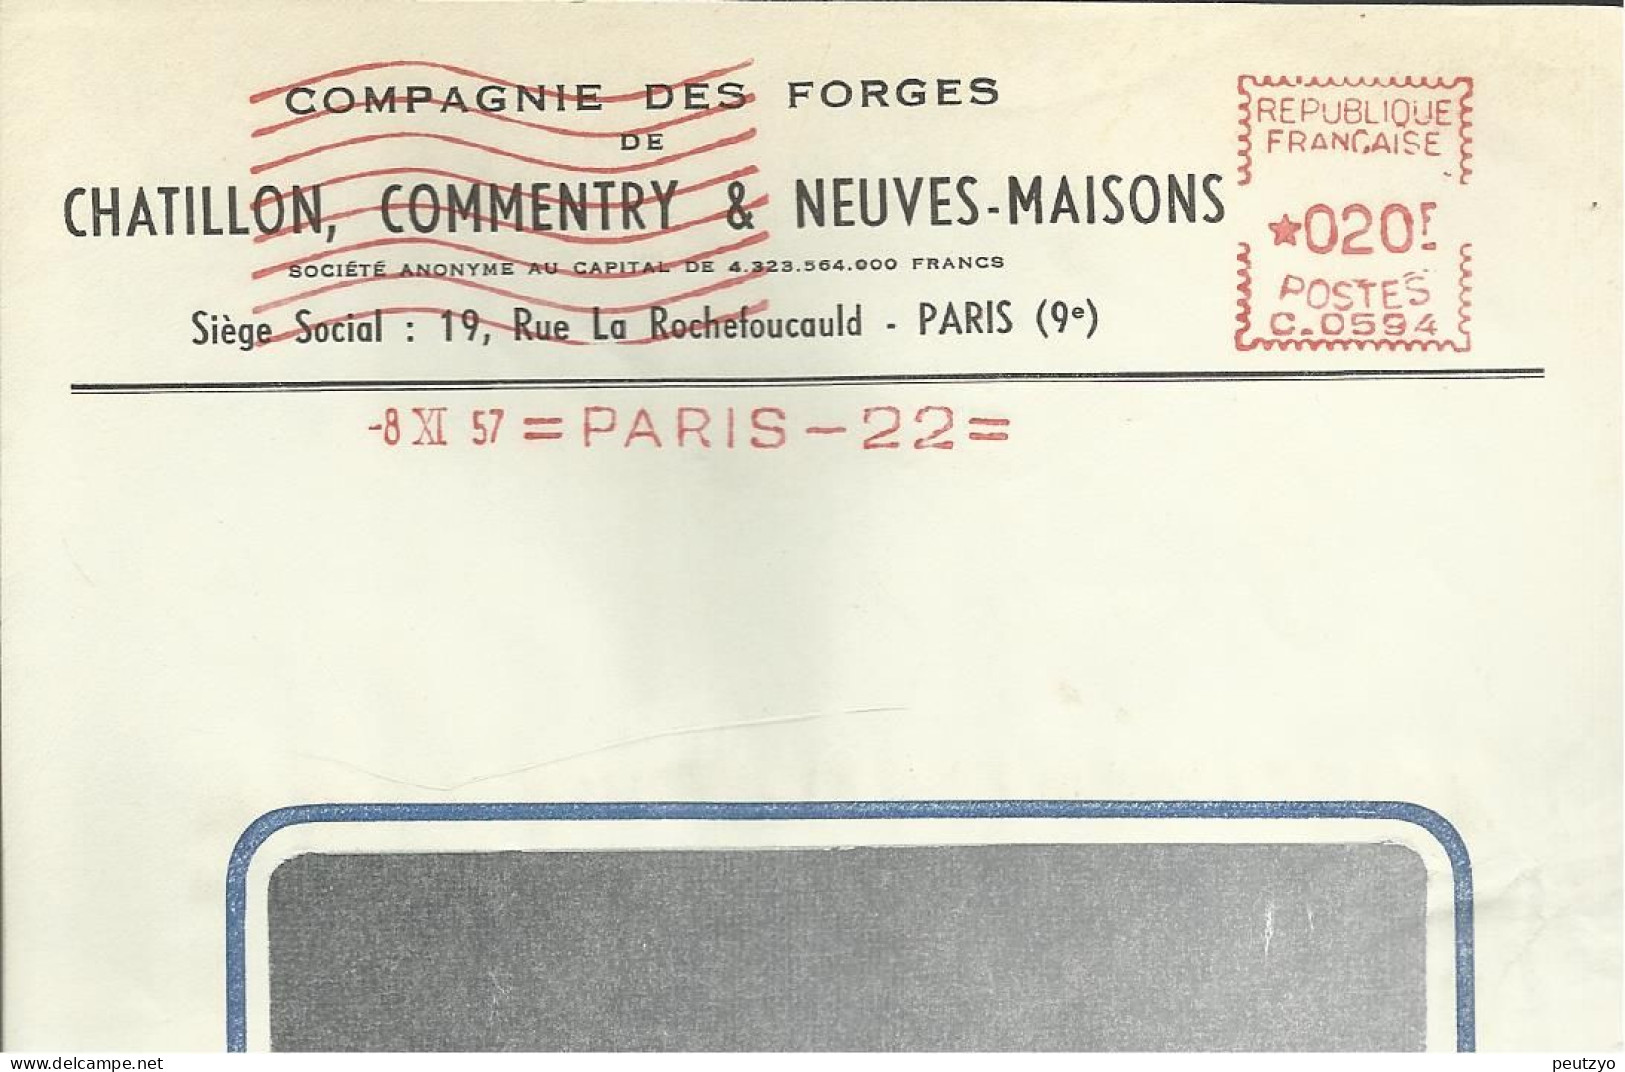 Lettre  EMA  Havas C 1957 Compagnie Des Forges  Chatillon ,commentry & Neuves Maisons 54 Usines Metier 75 Paris   A20/19 - Factories & Industries